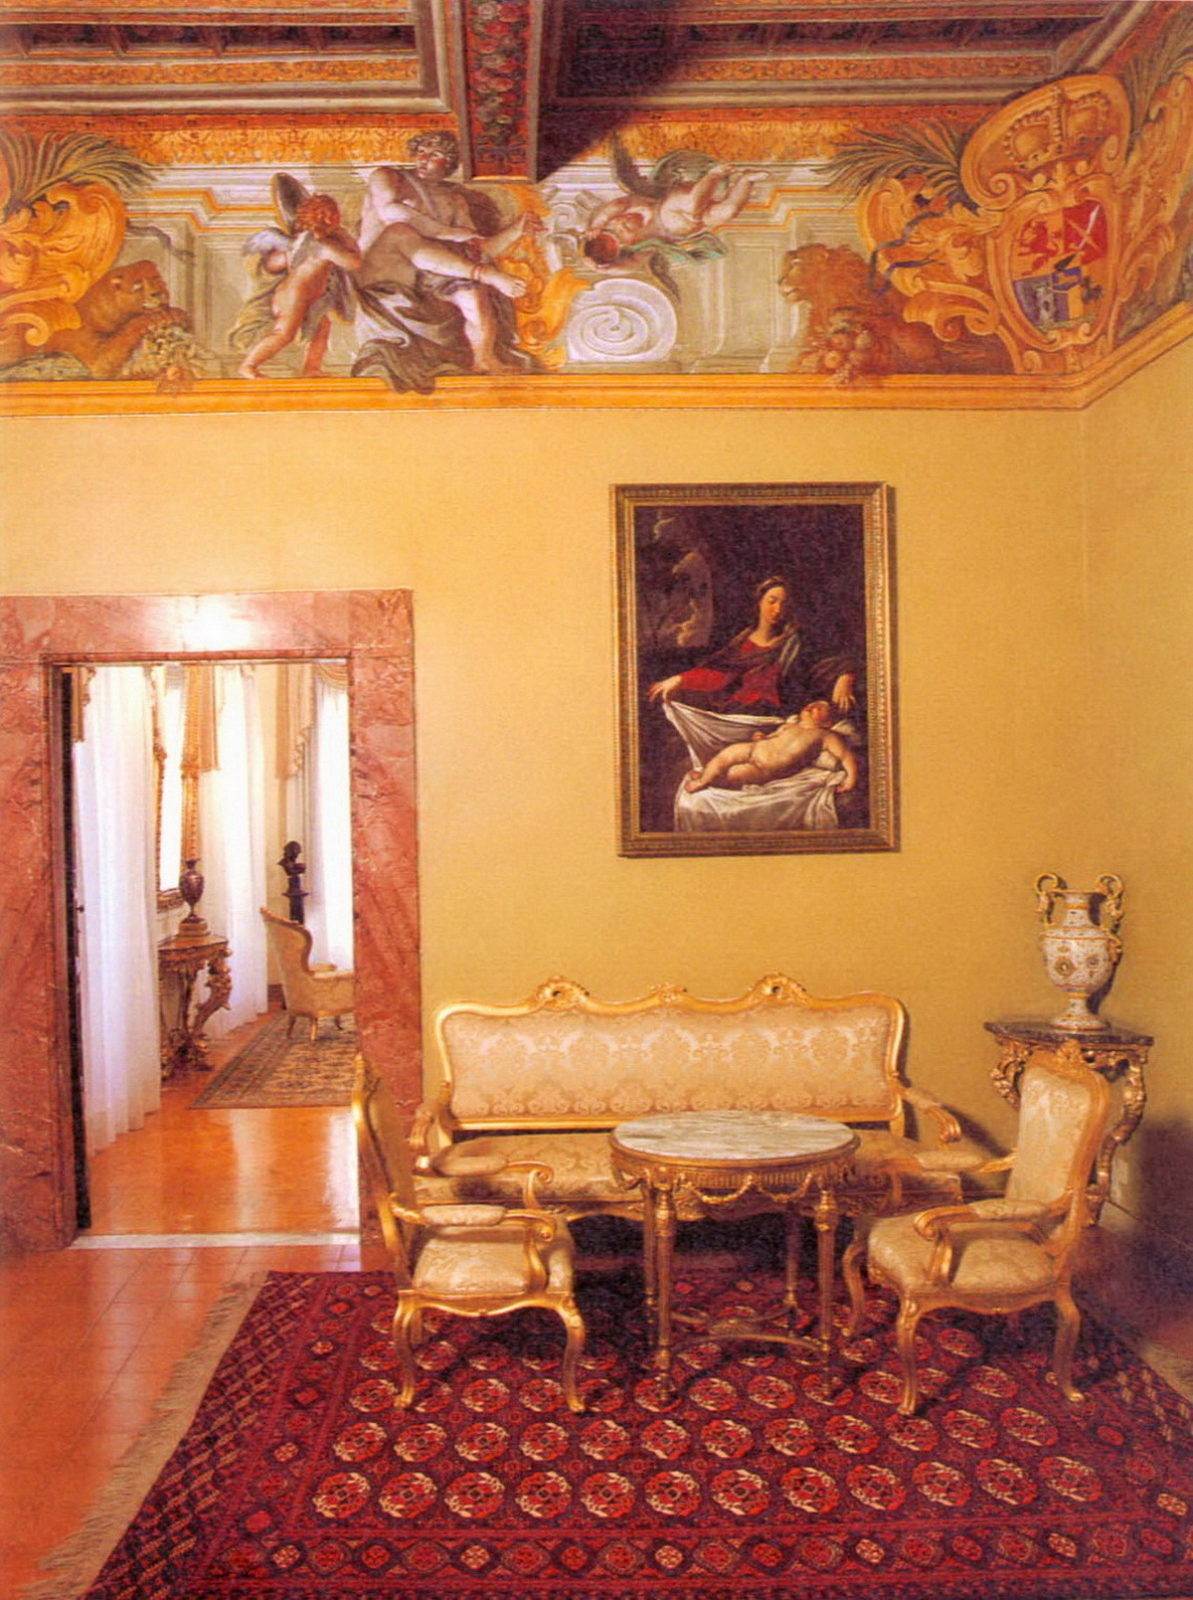 Зал с изображением Меркурия, развязывающего сандалии. В углах гербы князя Абамелек-Лазарева. Домик Бельведер